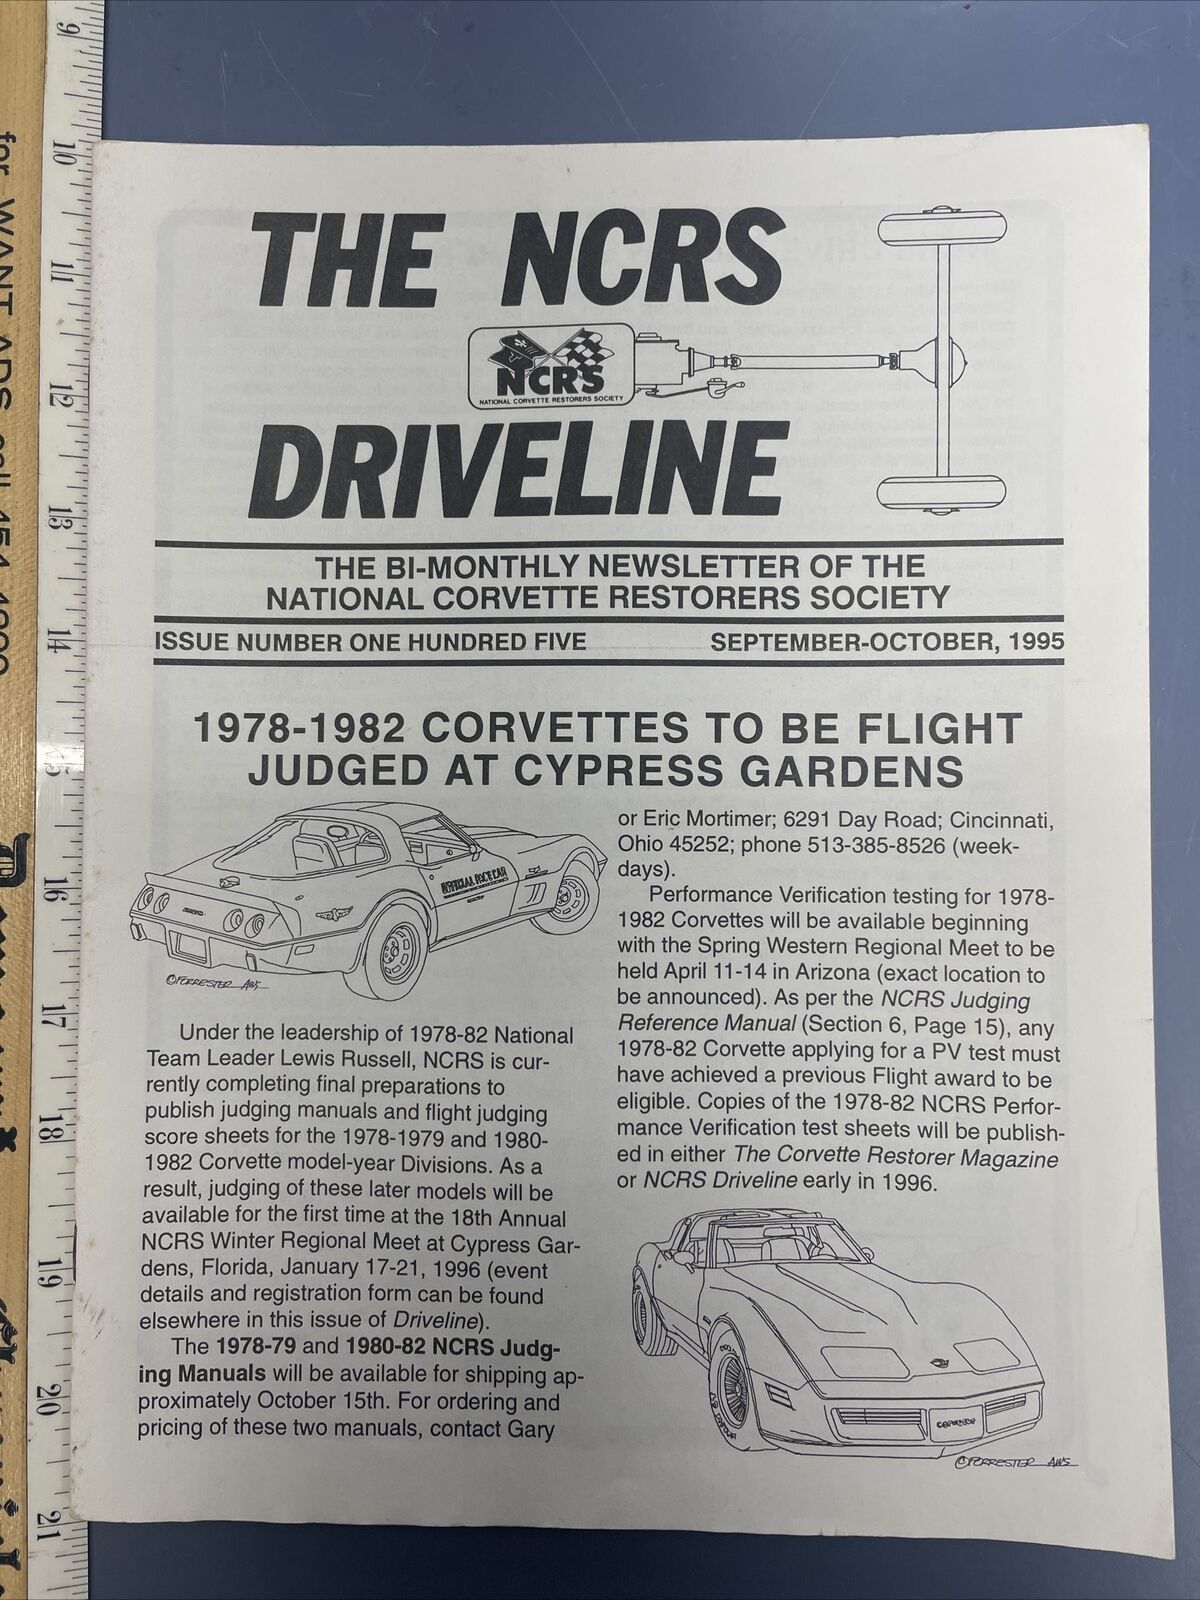 Vintage Sept 1995 The NCRS Driveline Nat. Corvette Restorers Society Newsletter